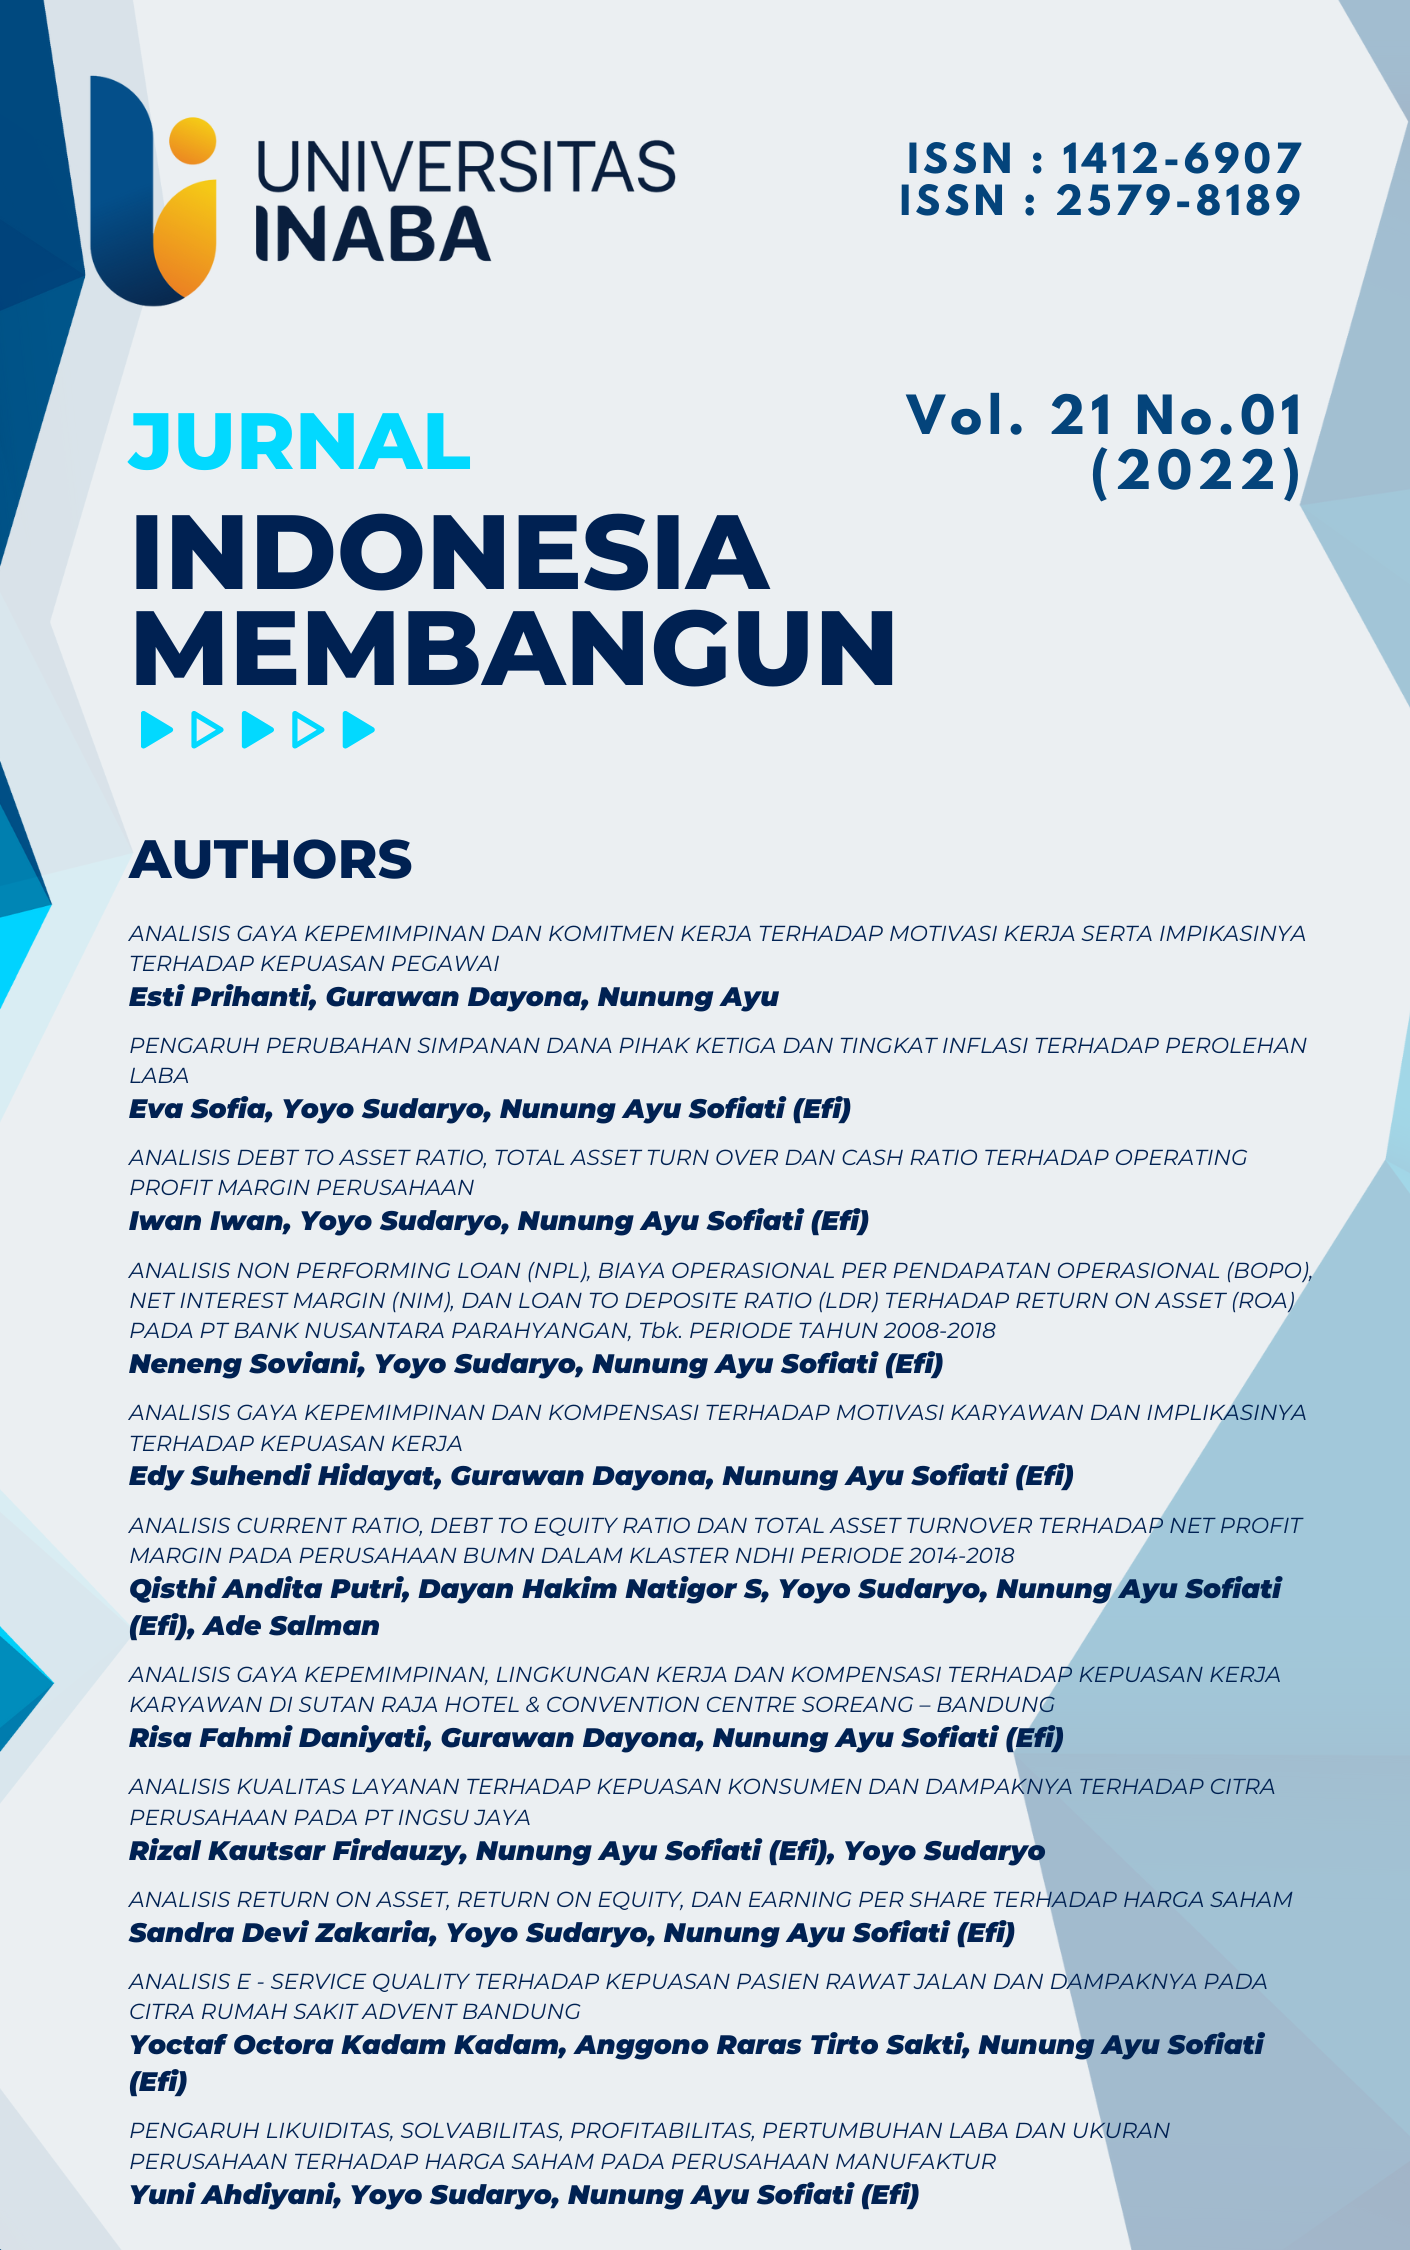 					View Vol. 21 No. 01 (2022): Jurnal Indonesia Membangun
				